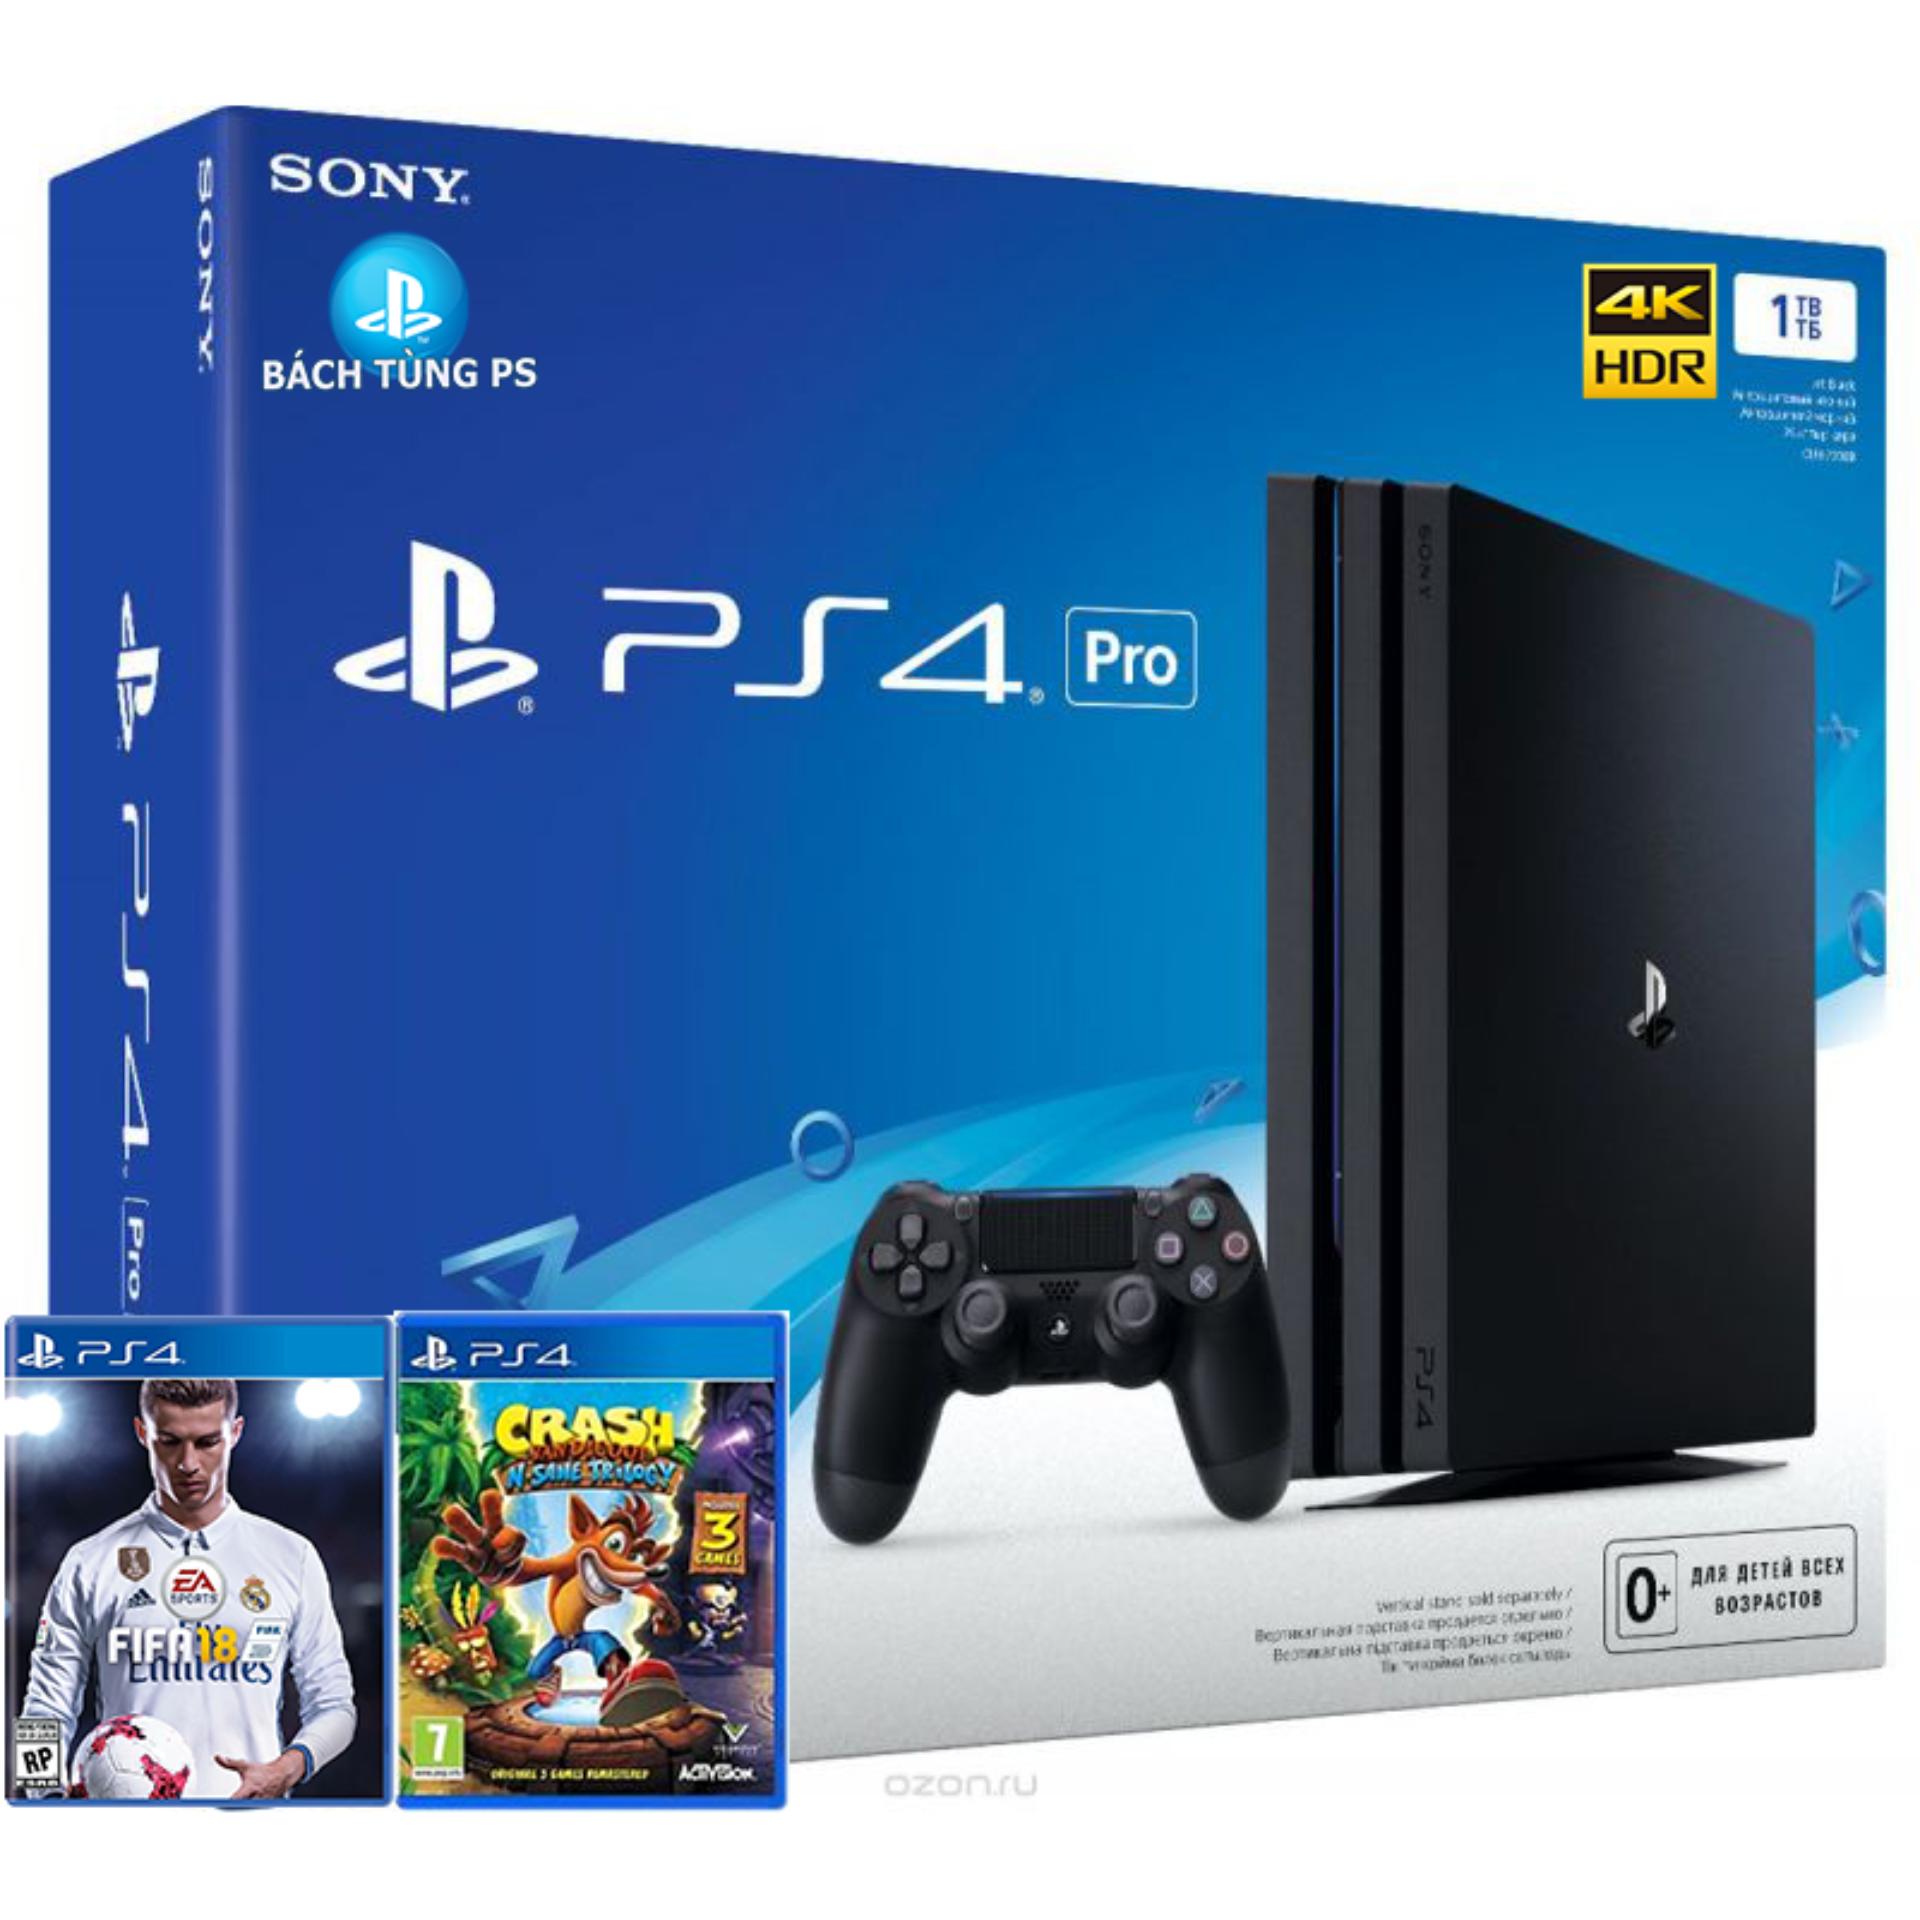 Bộ máy chơi game Sony PS4 Pro 1TB tặng kèm đĩa game Crash Bandicoot N. Sane Trilogy và Fifa 2018